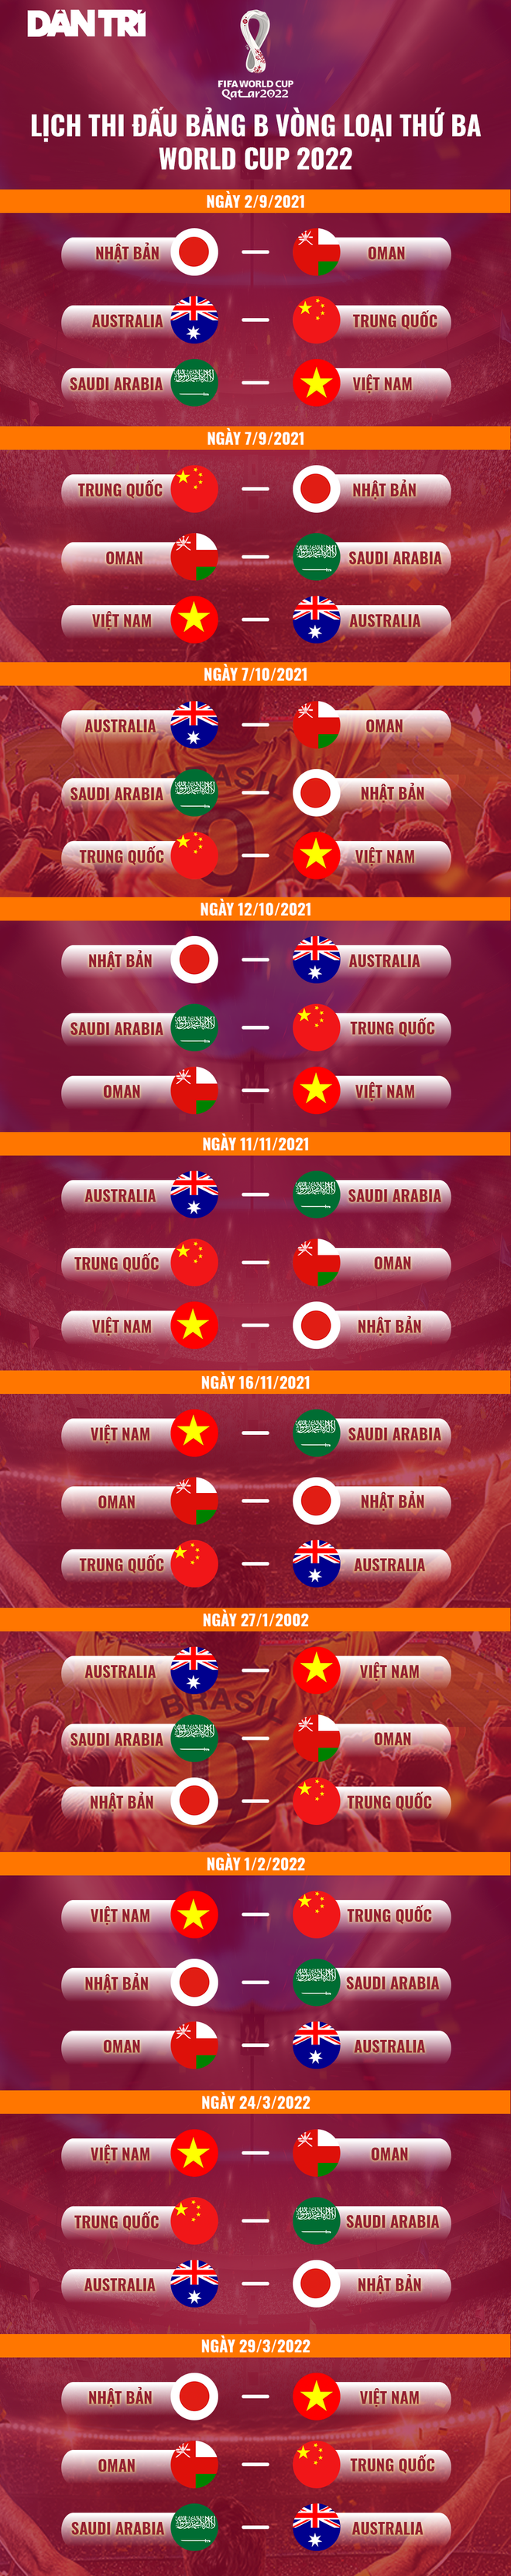 Siêu máy tính dự đoán về thứ hạng của tuyển Việt Nam ở vòng loại World Cup - 3